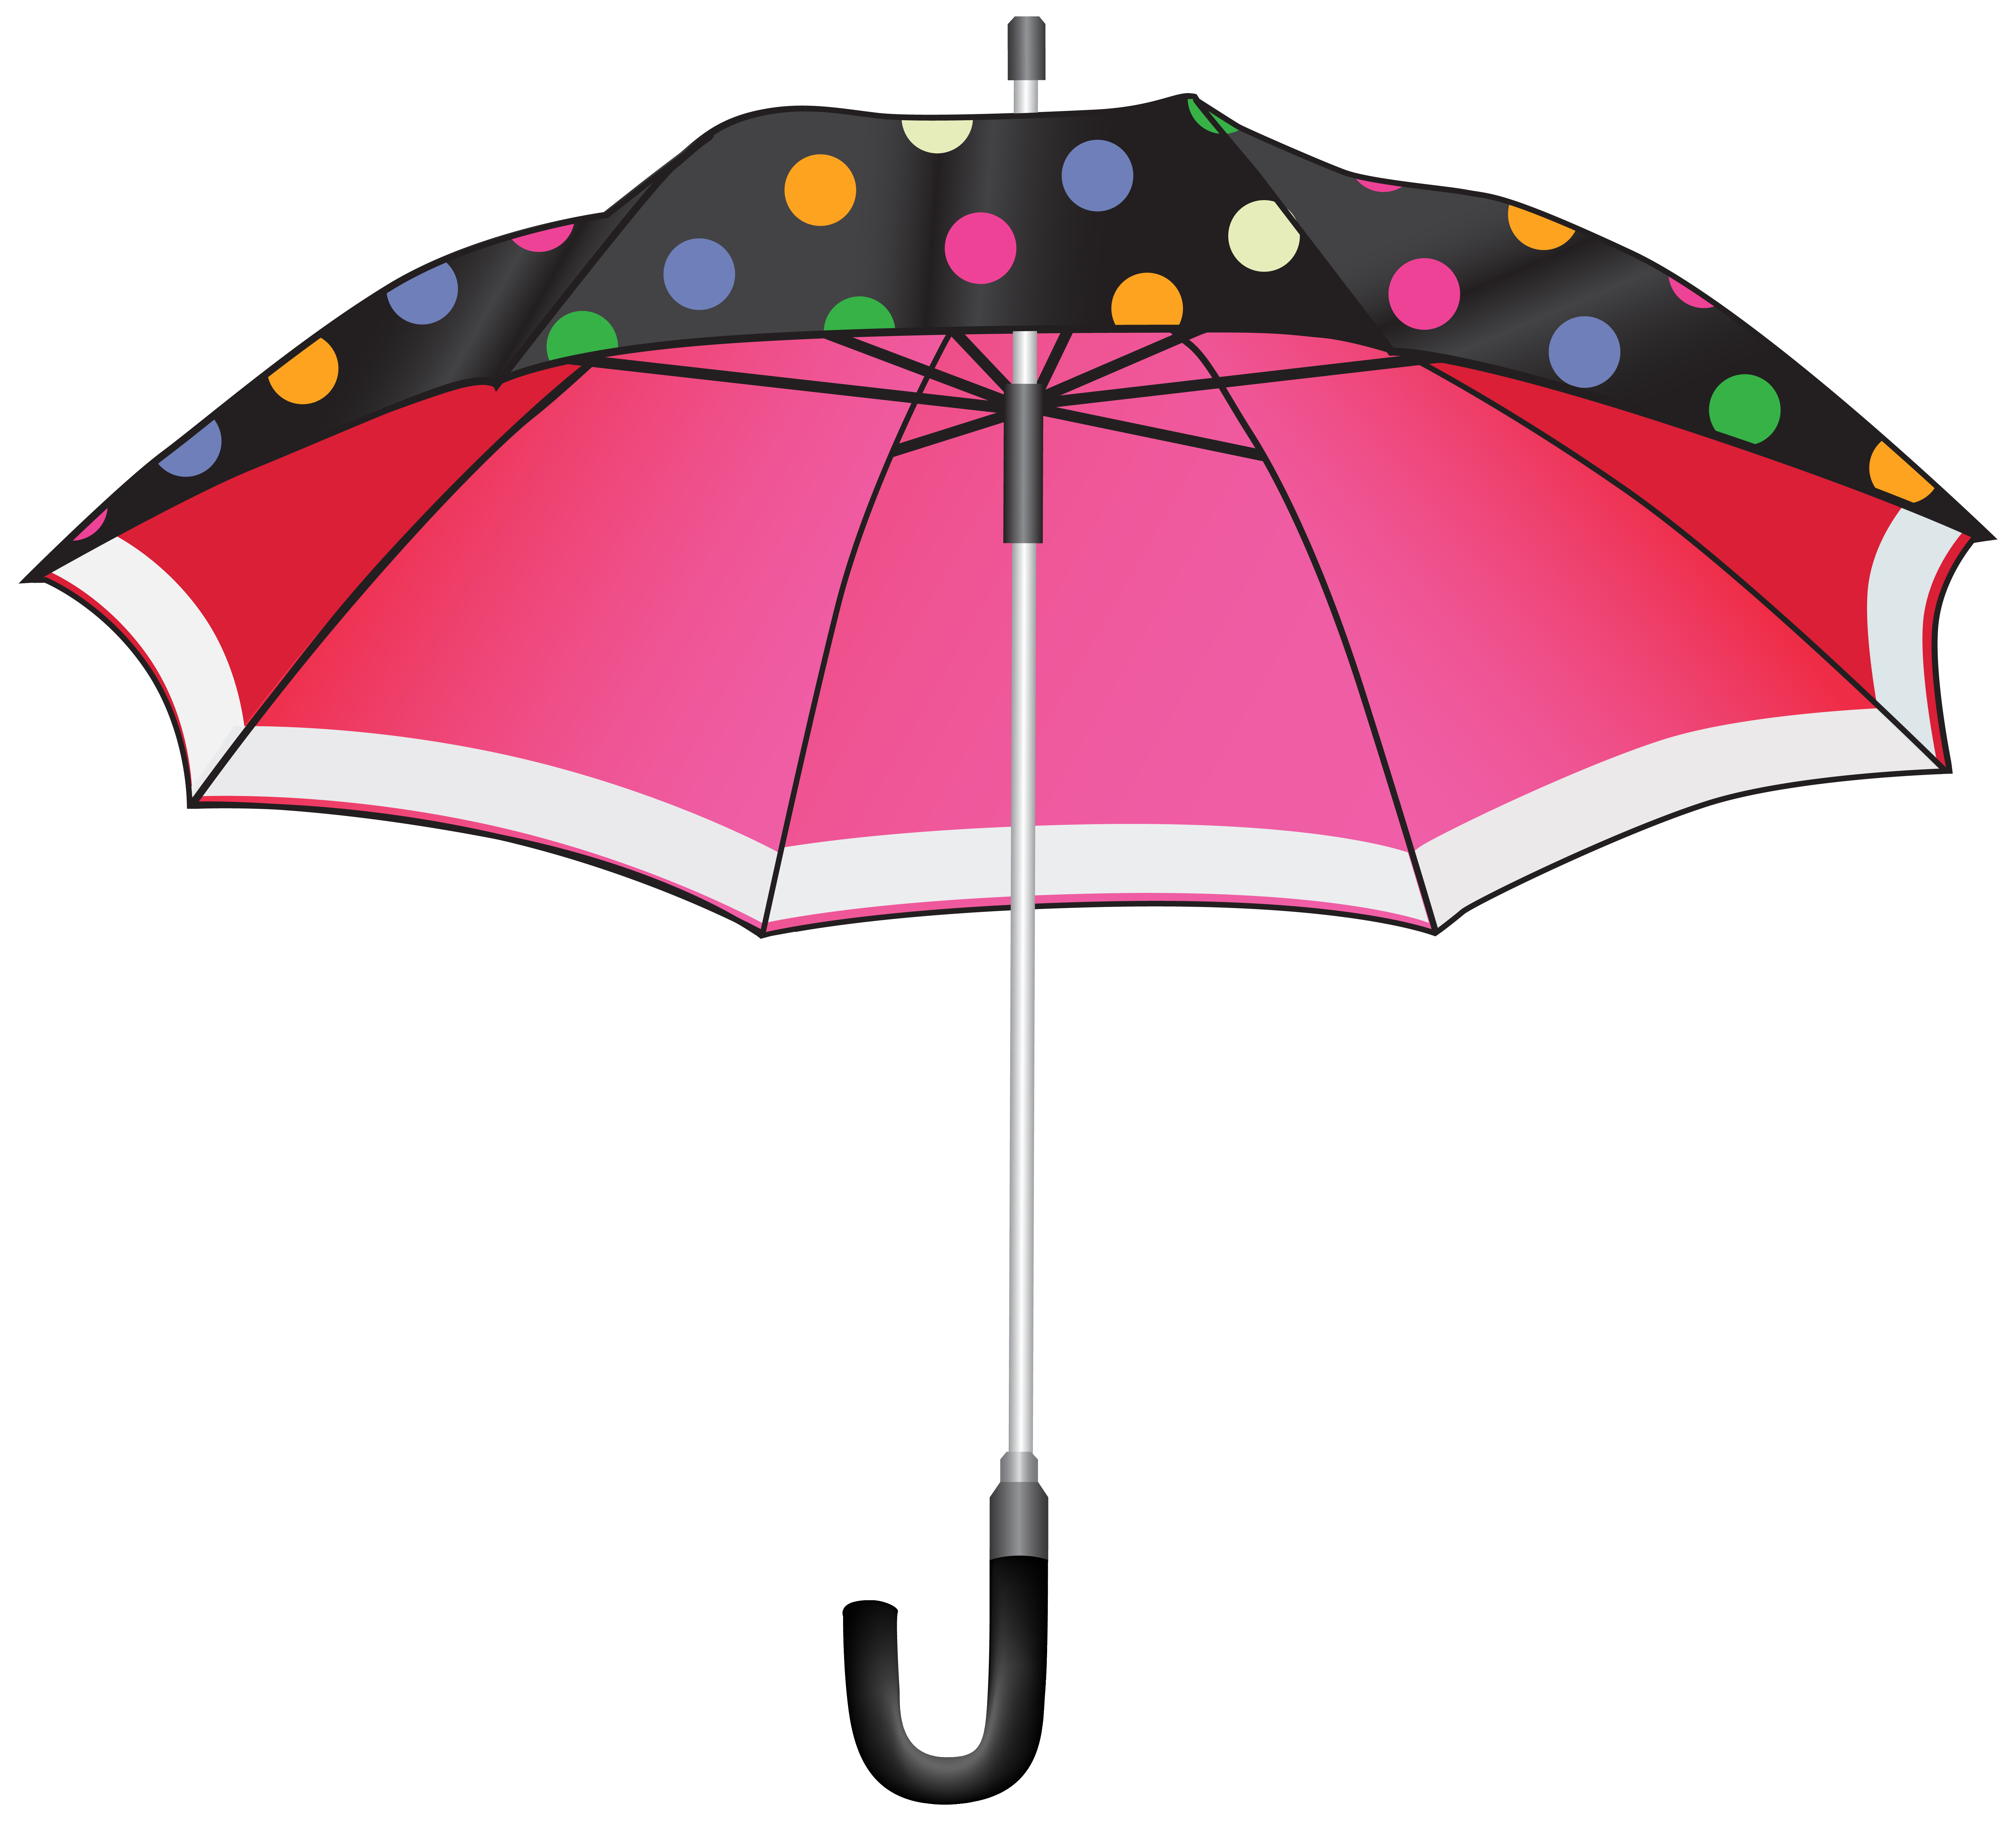 Clipart of umbrella 